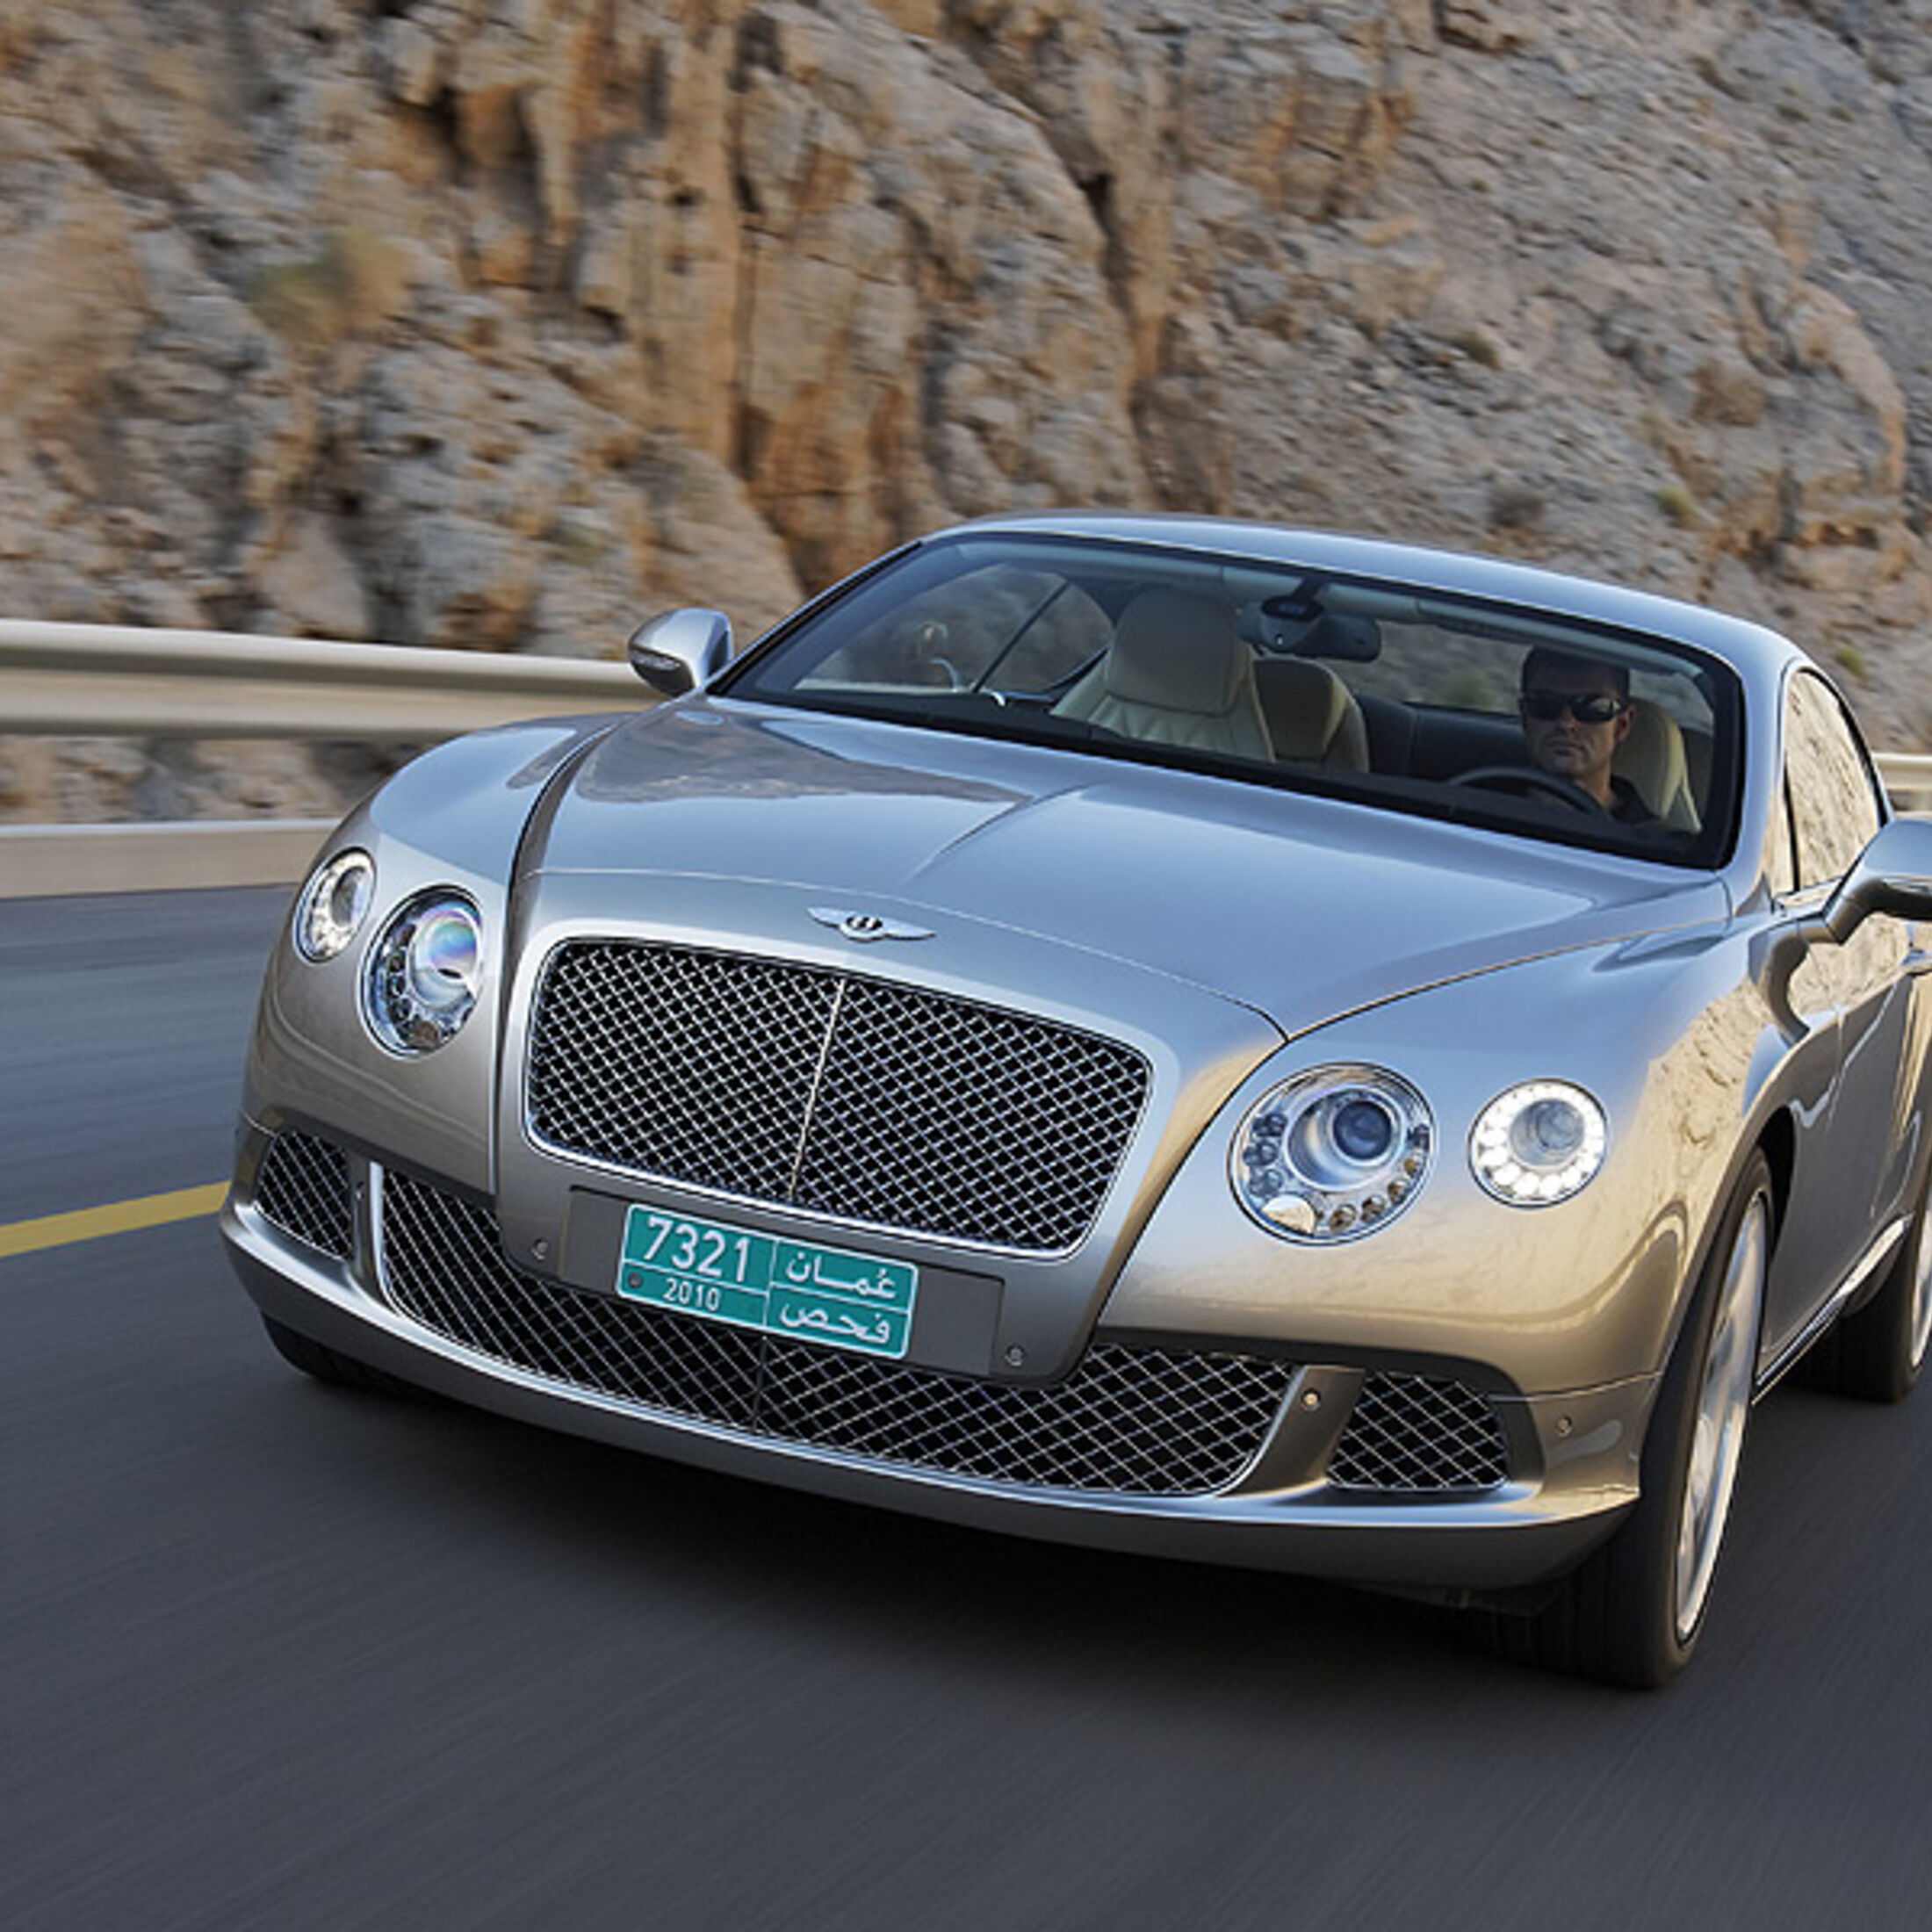 https://imgr1.auto-motor-und-sport.de/1210-Bentley-Continental-GT-jsonLd1x1-c4994cf7-440955.jpg